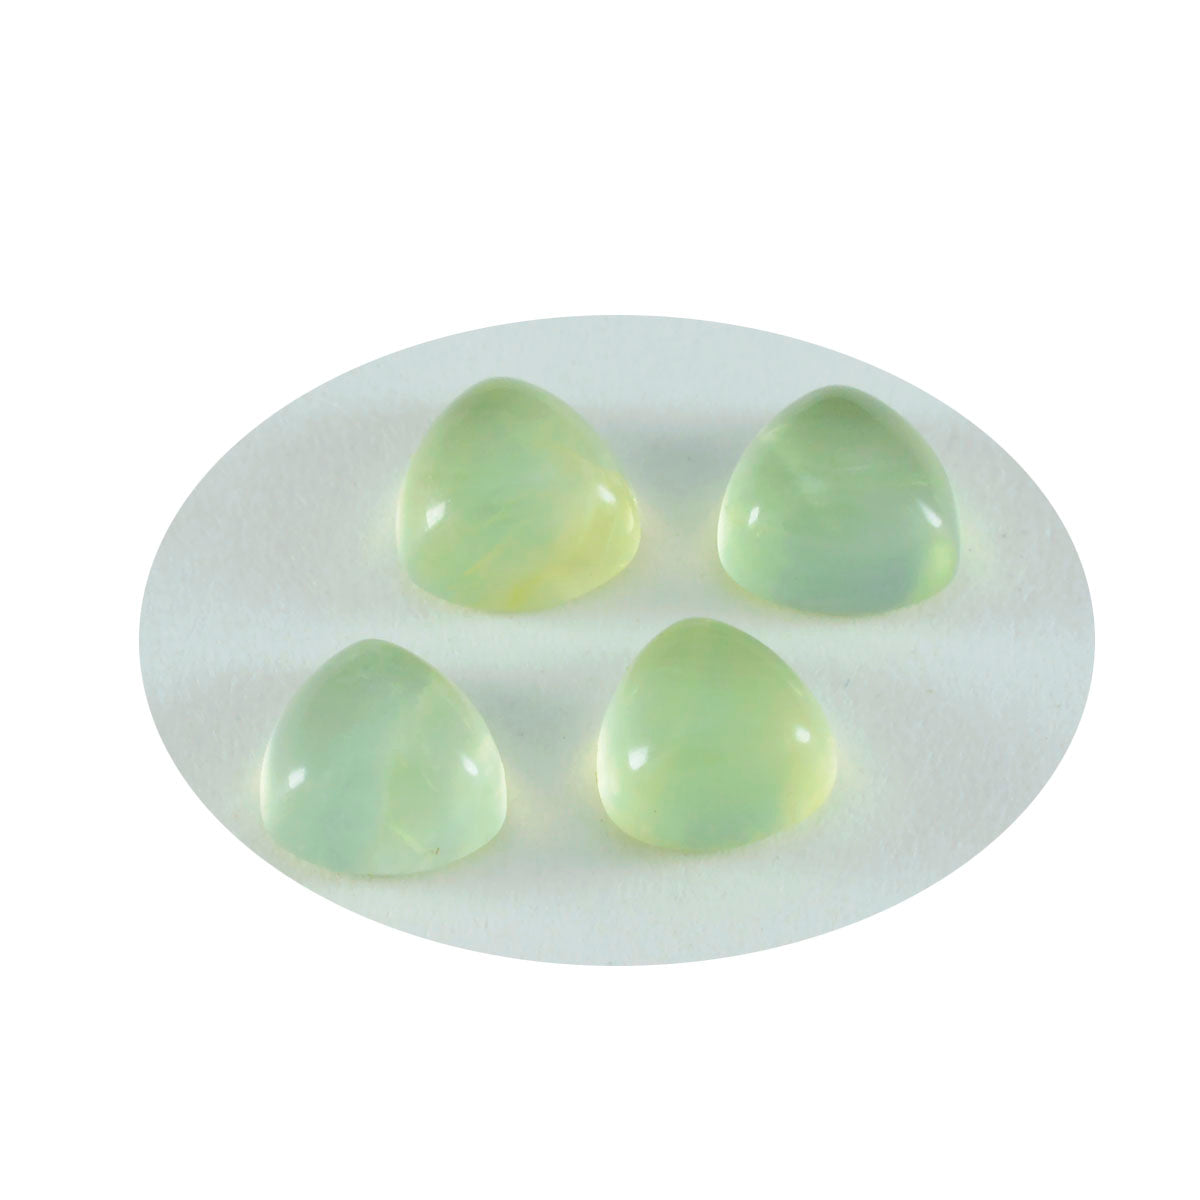 riyogems 1 pieza cabujón de prehnita verde 14x14 mm forma de billón piedra preciosa suelta de calidad dulce